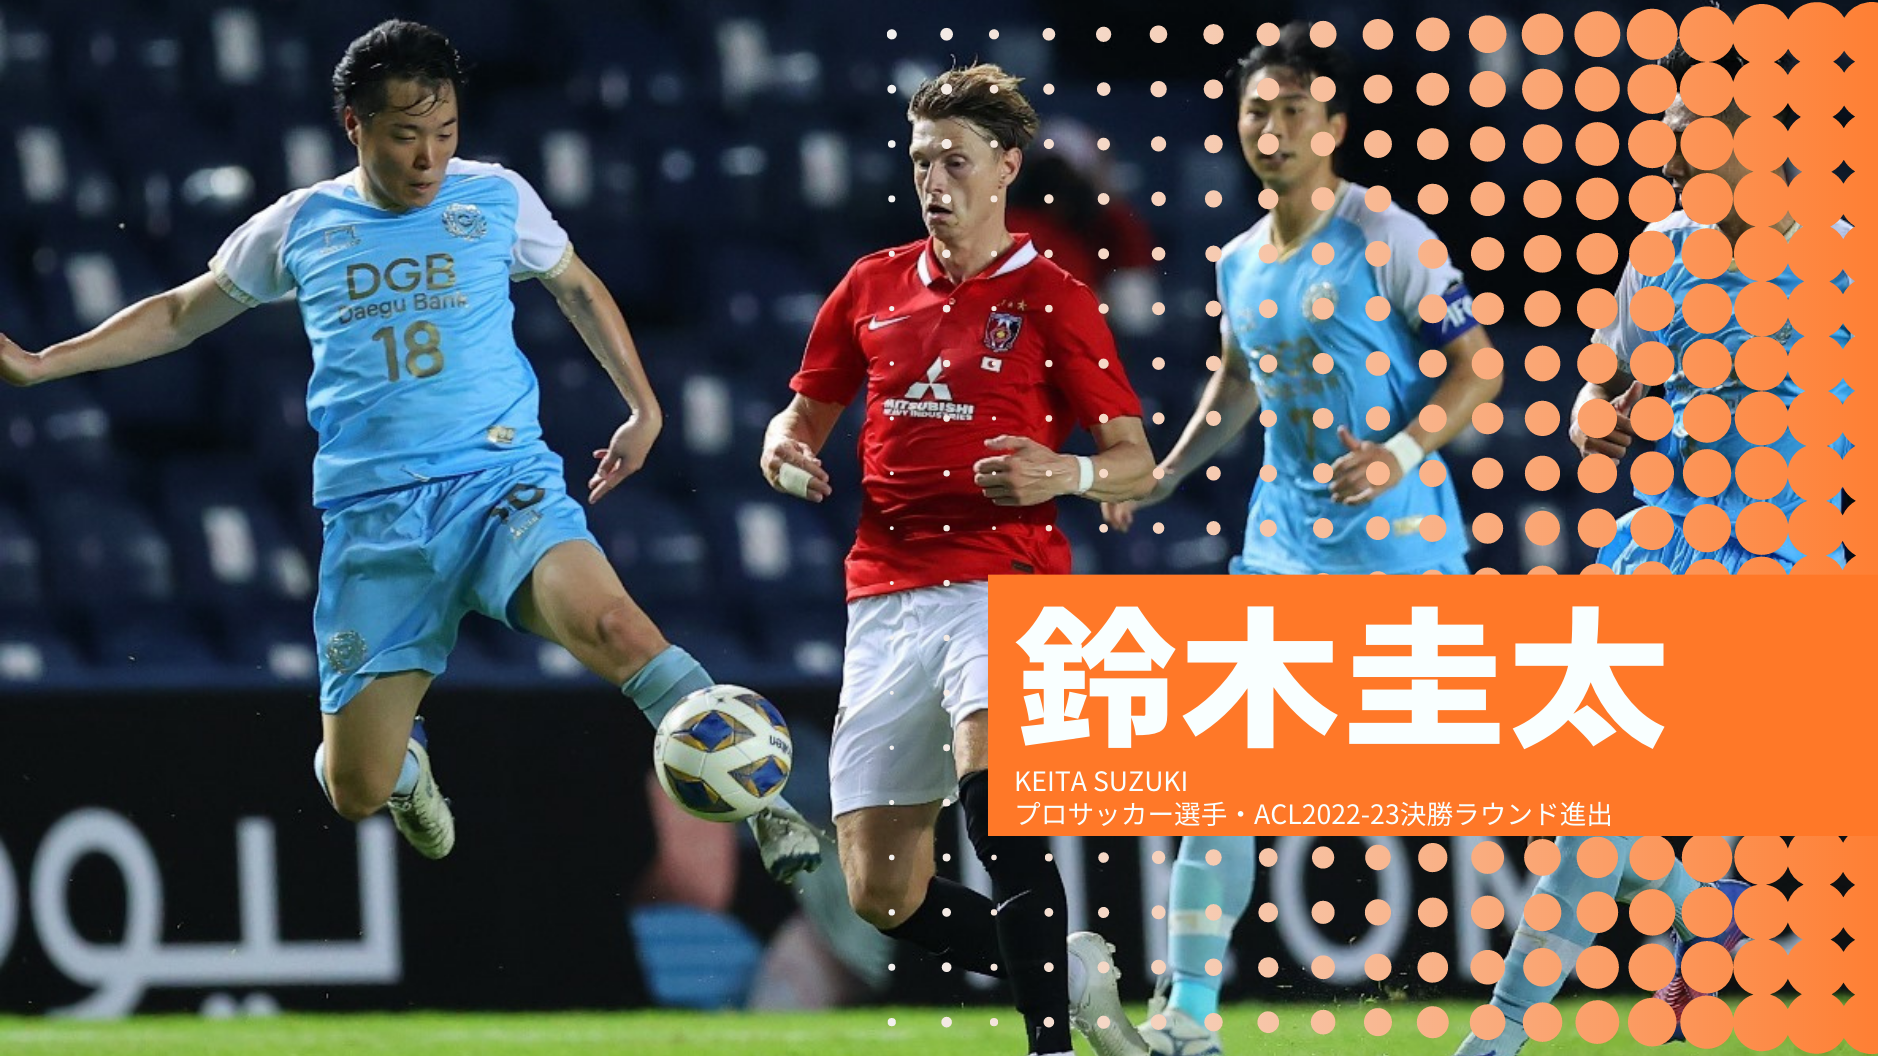 鈴木圭太
KEITA SUZUKI
プロサッカー選手・ACL2022-23決勝ラウンド進出